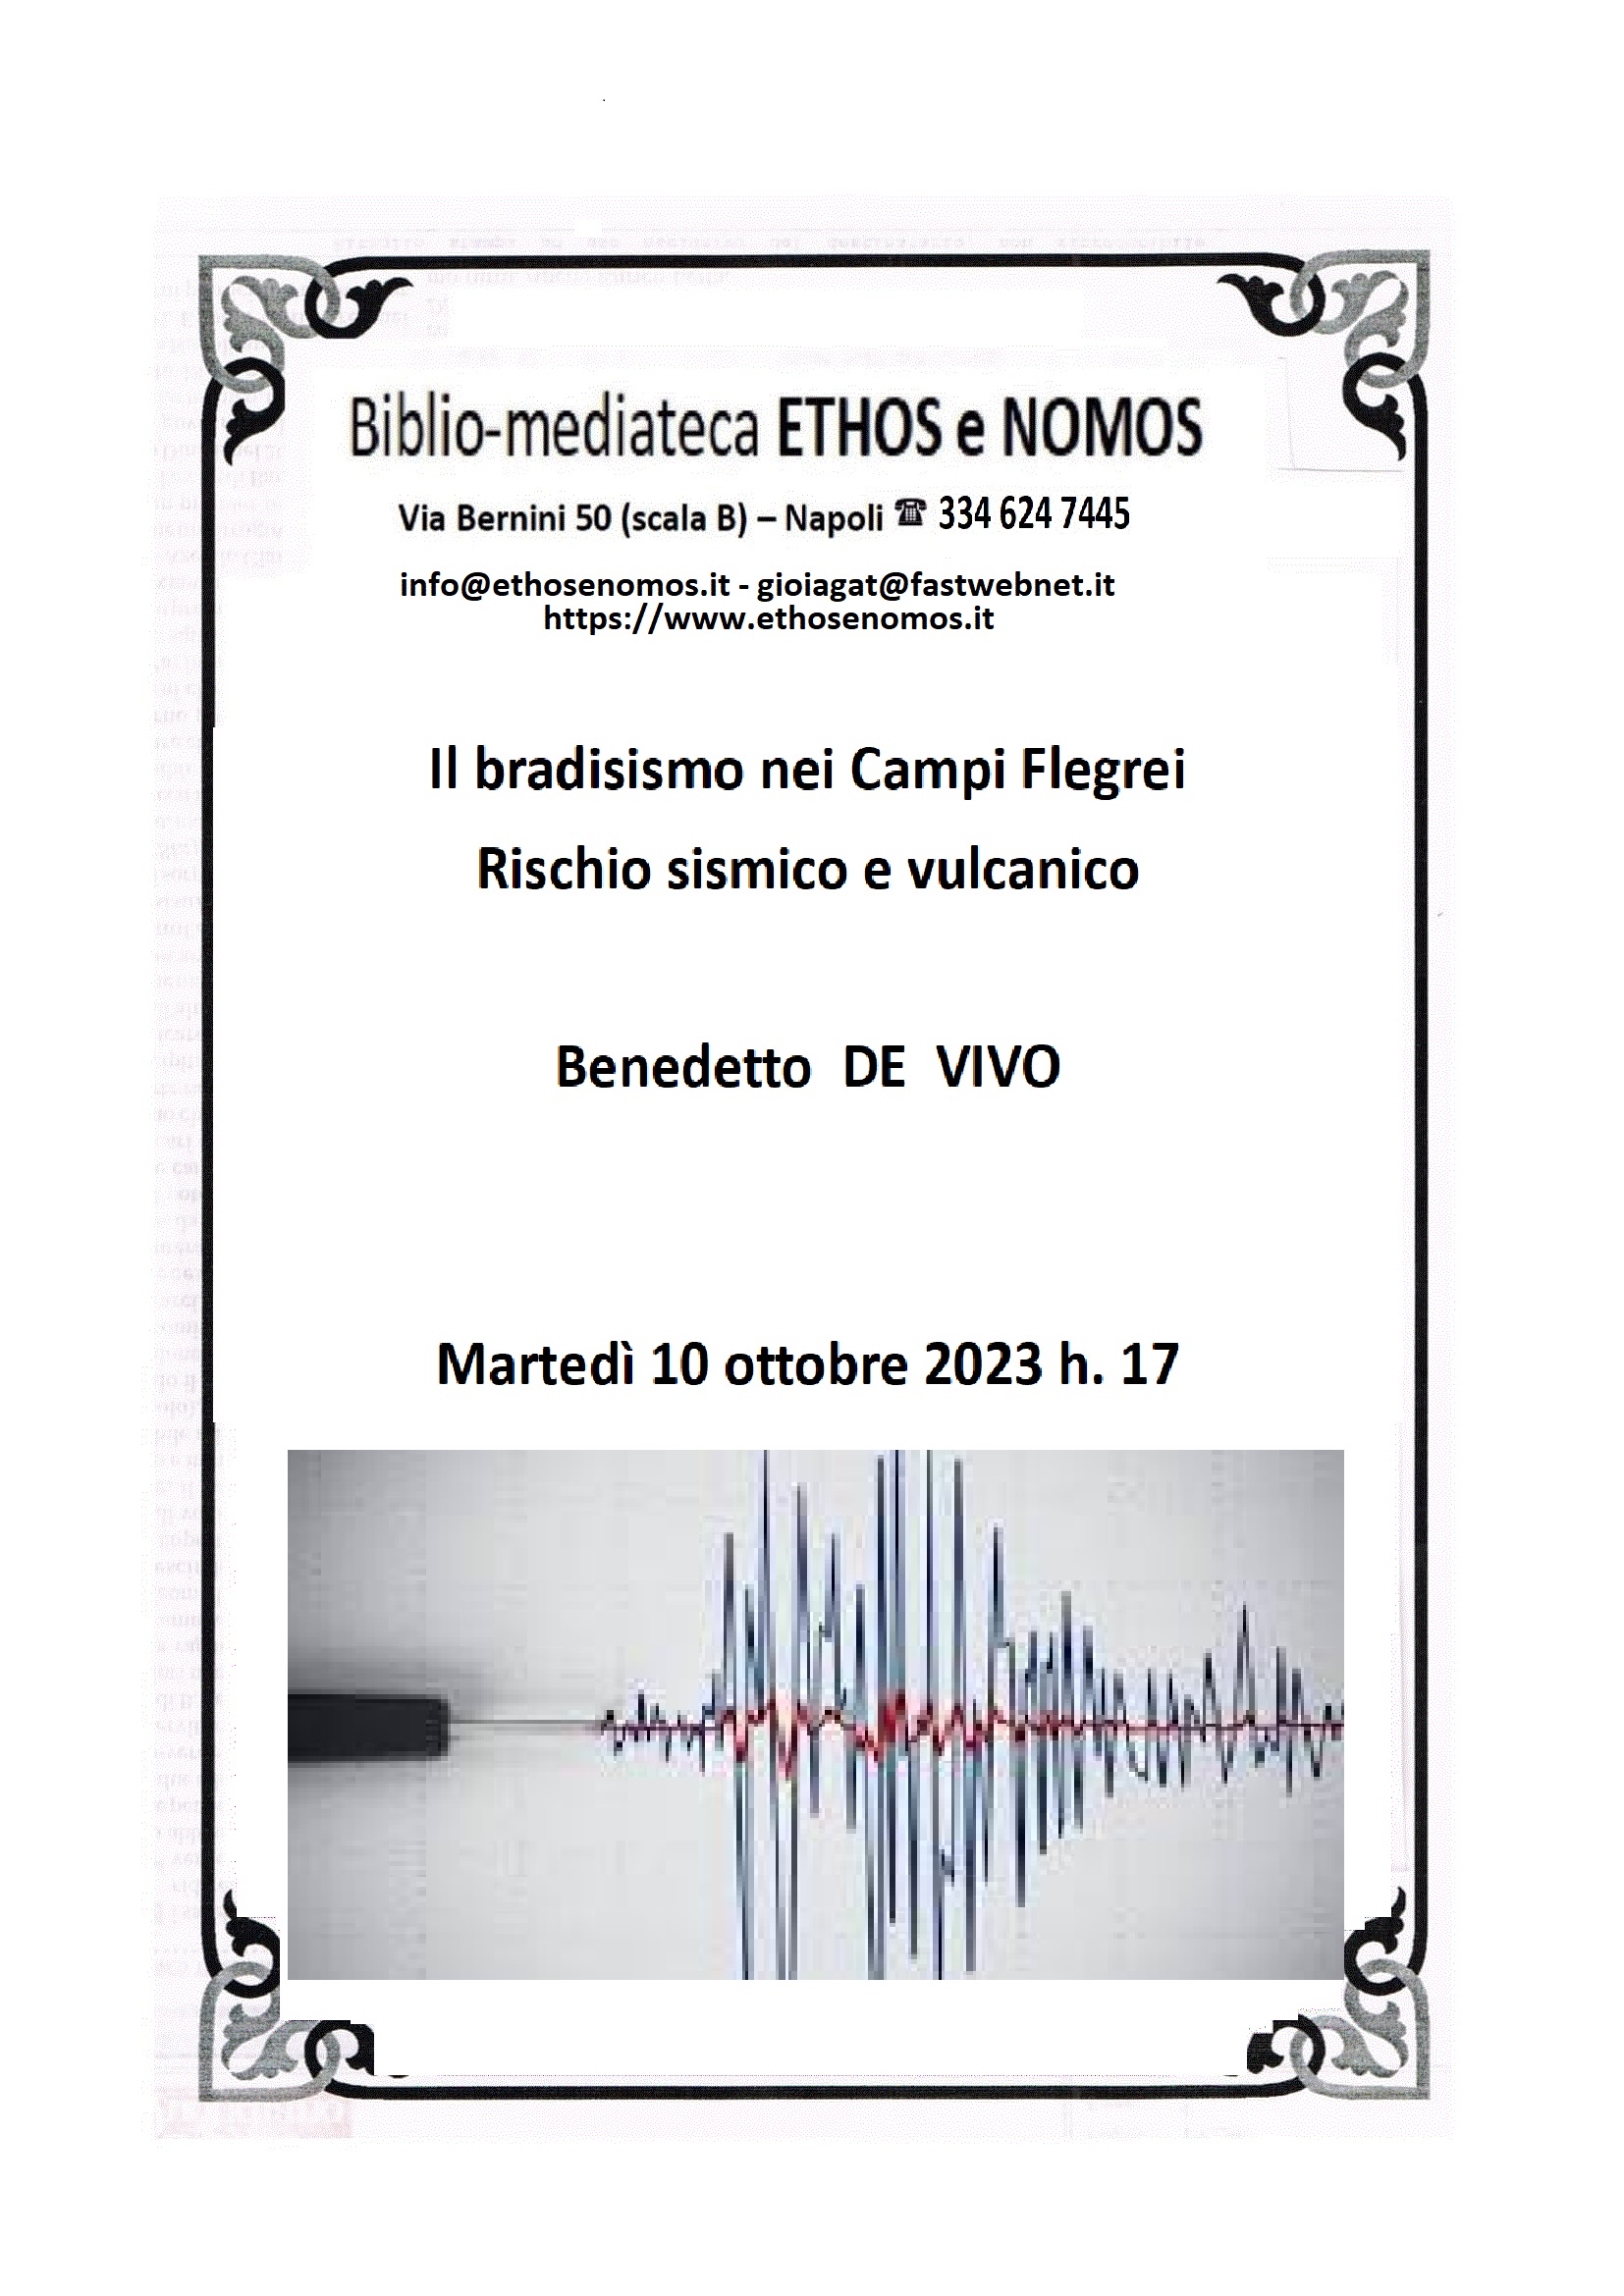 Benedetto De Vivo - Rischio sismico e vulcanico in area flegrea